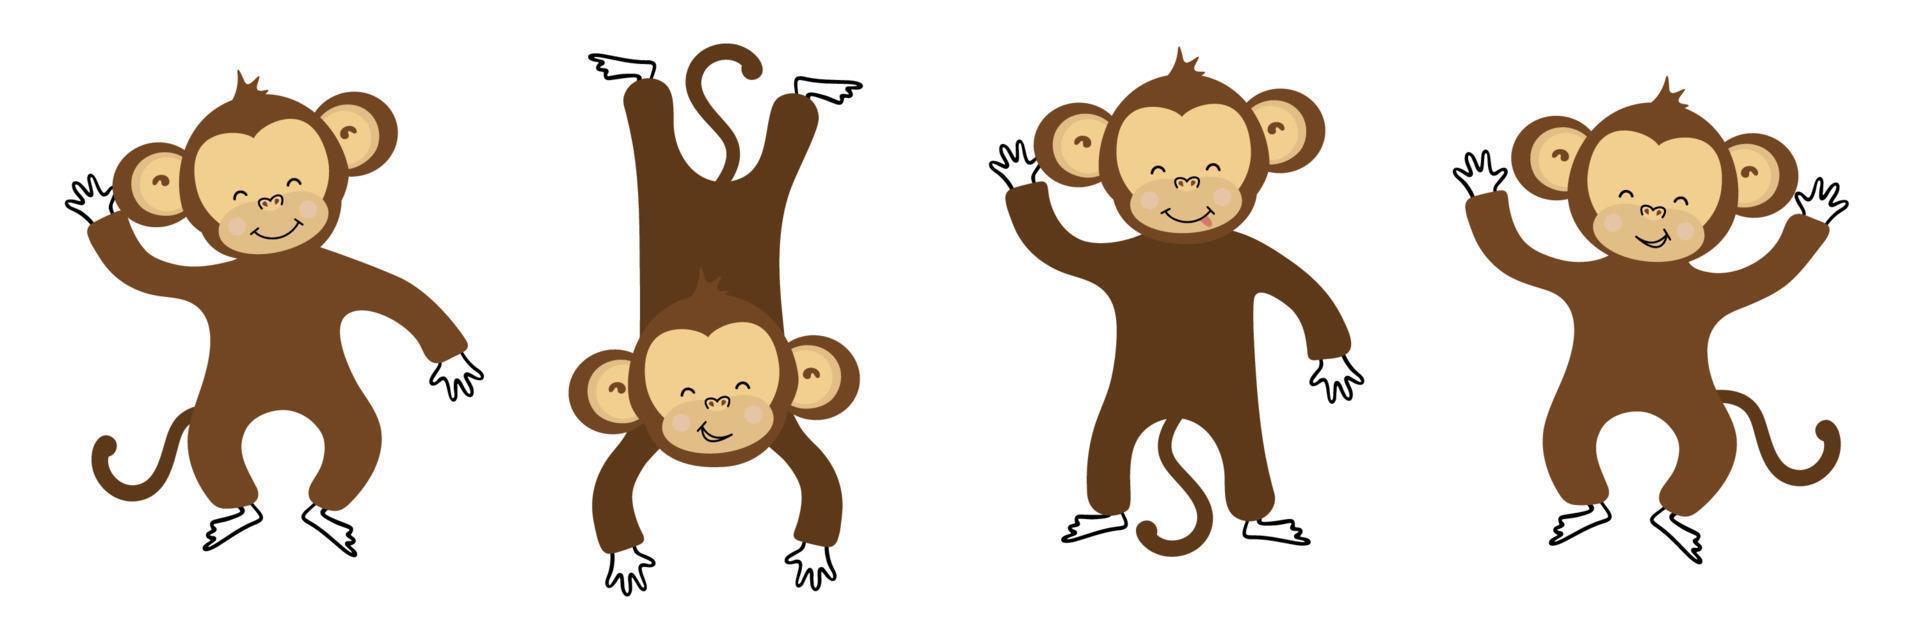 schattig grappig apen kleurrijk verzameling vector